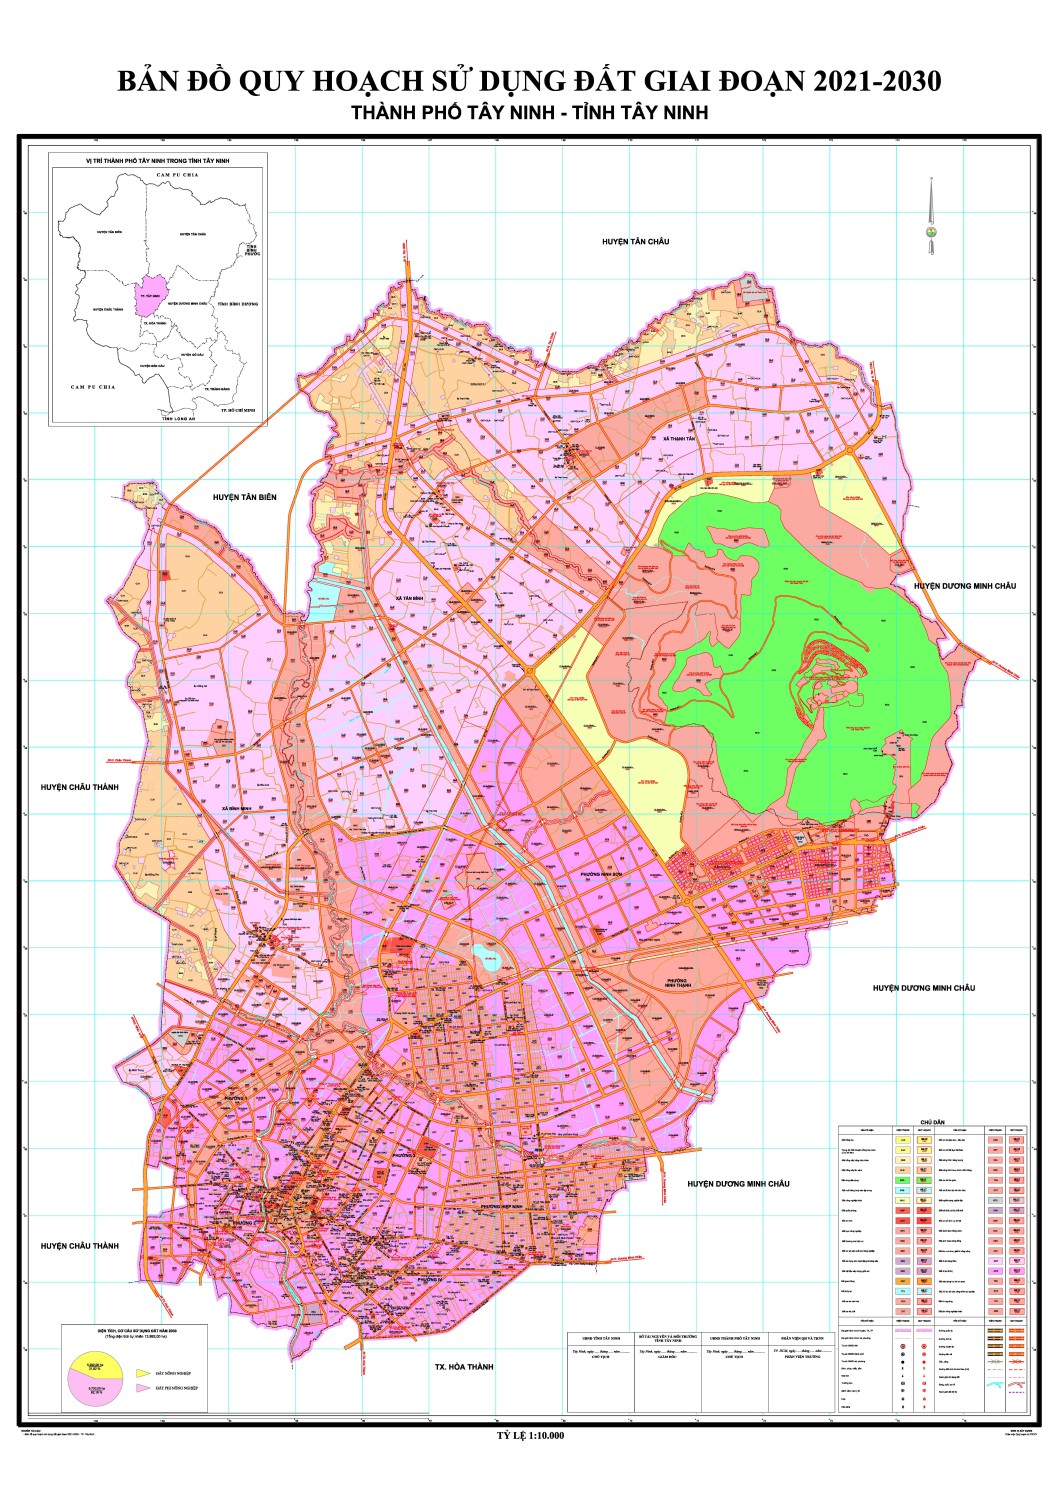 Thông tin chi tiết về bản đồ quy hoạch sử dụng đất cho dự án xây dựng mới